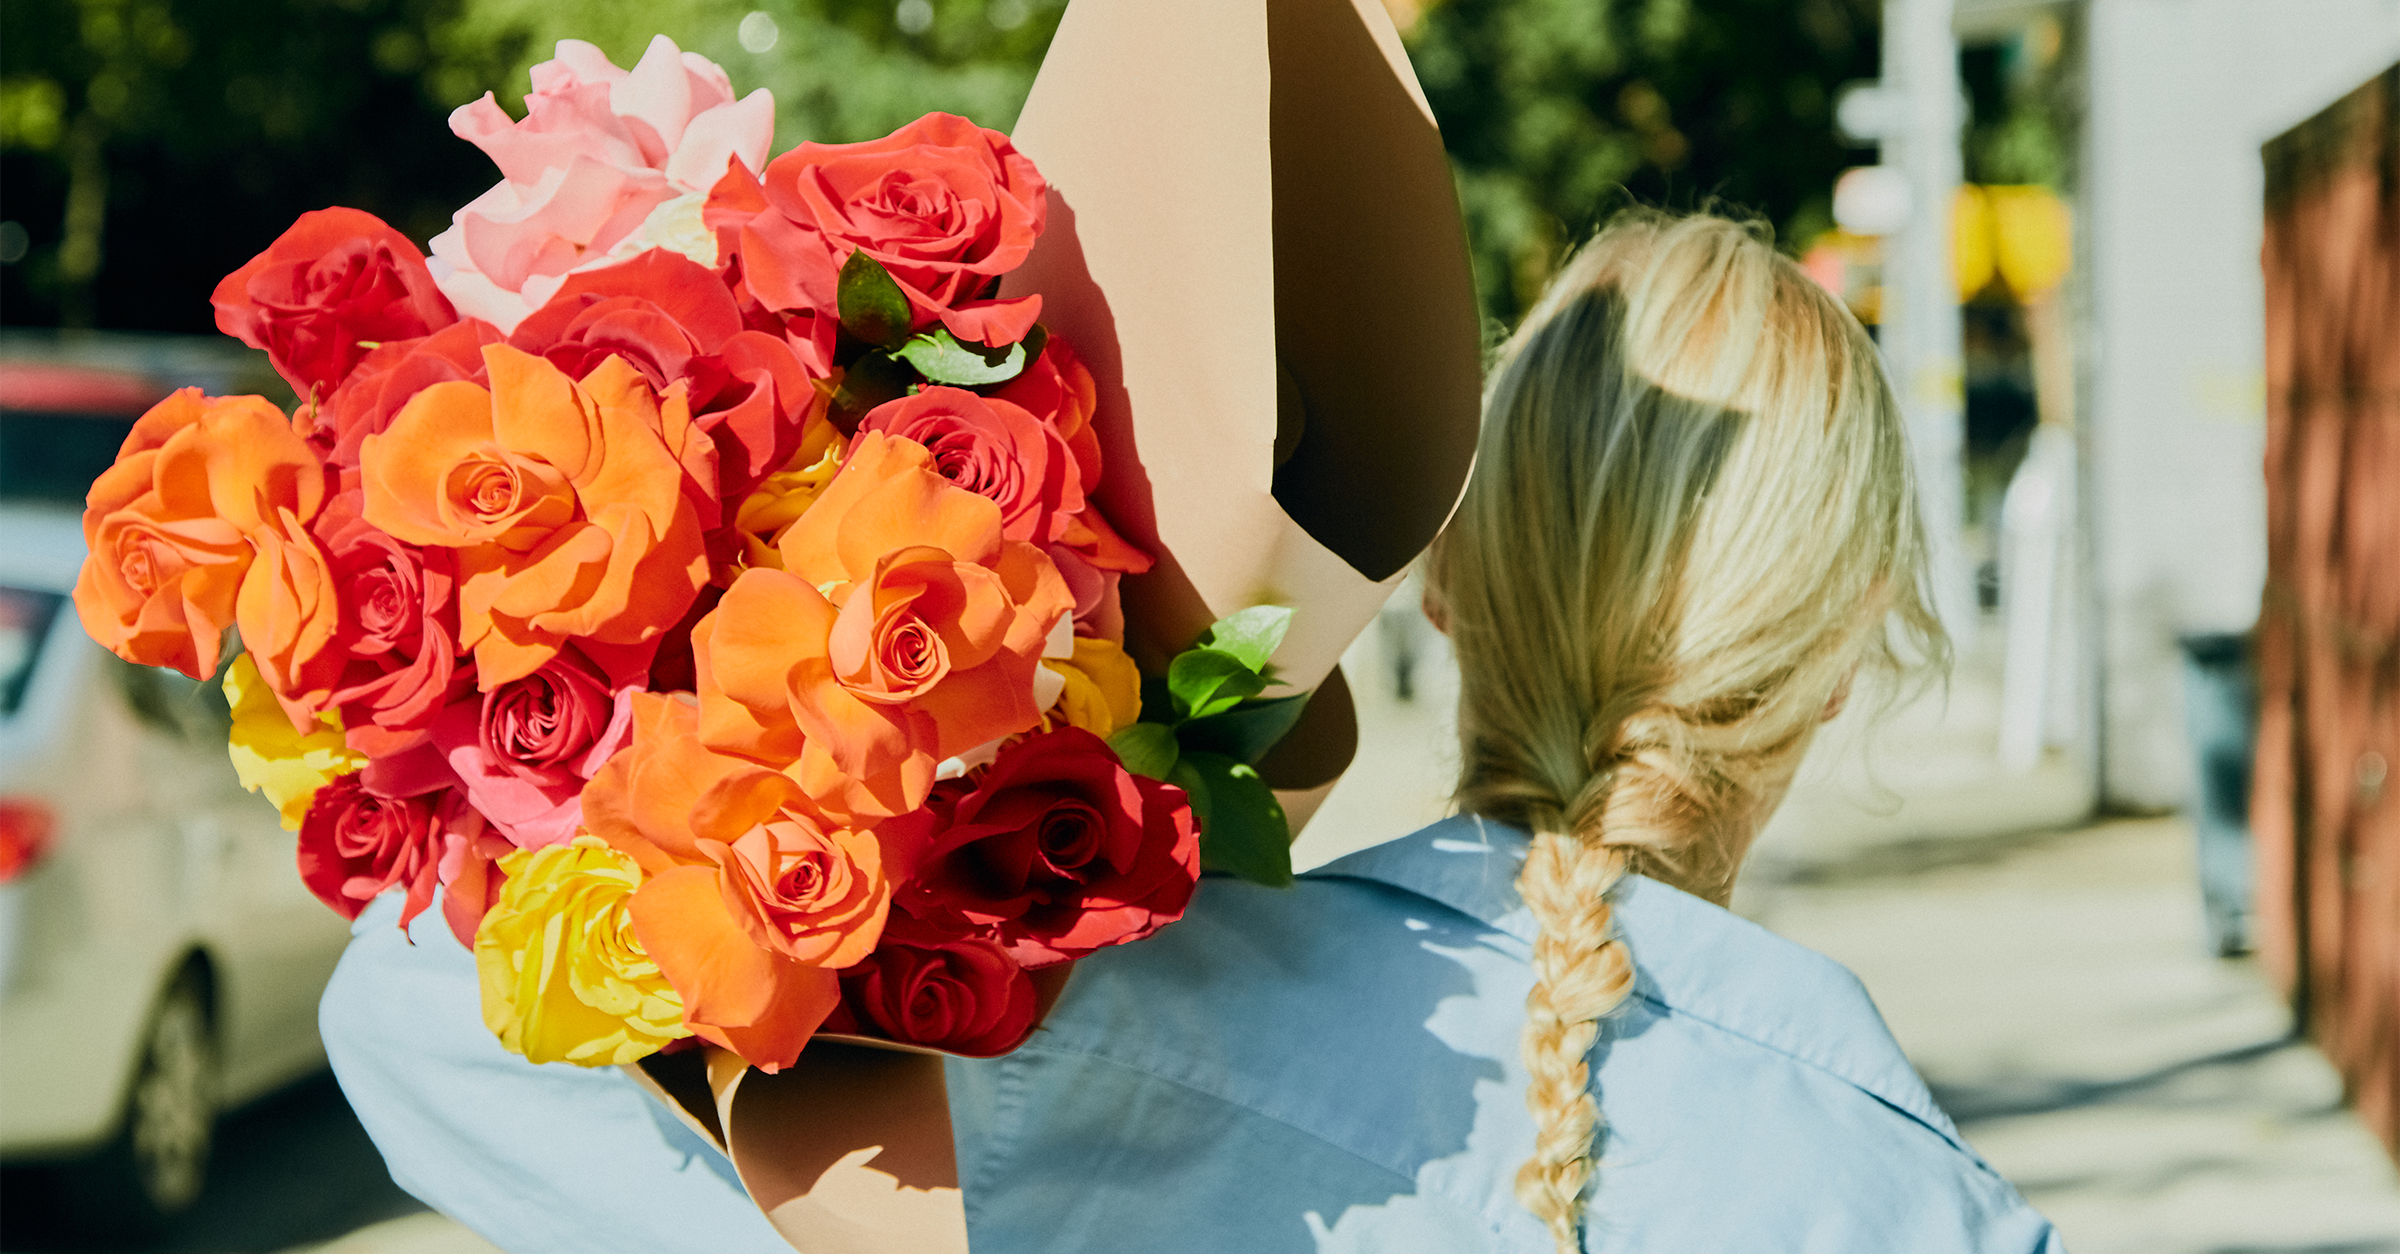 Rosor Leverans: Skicka rosenbuketter | Blommor